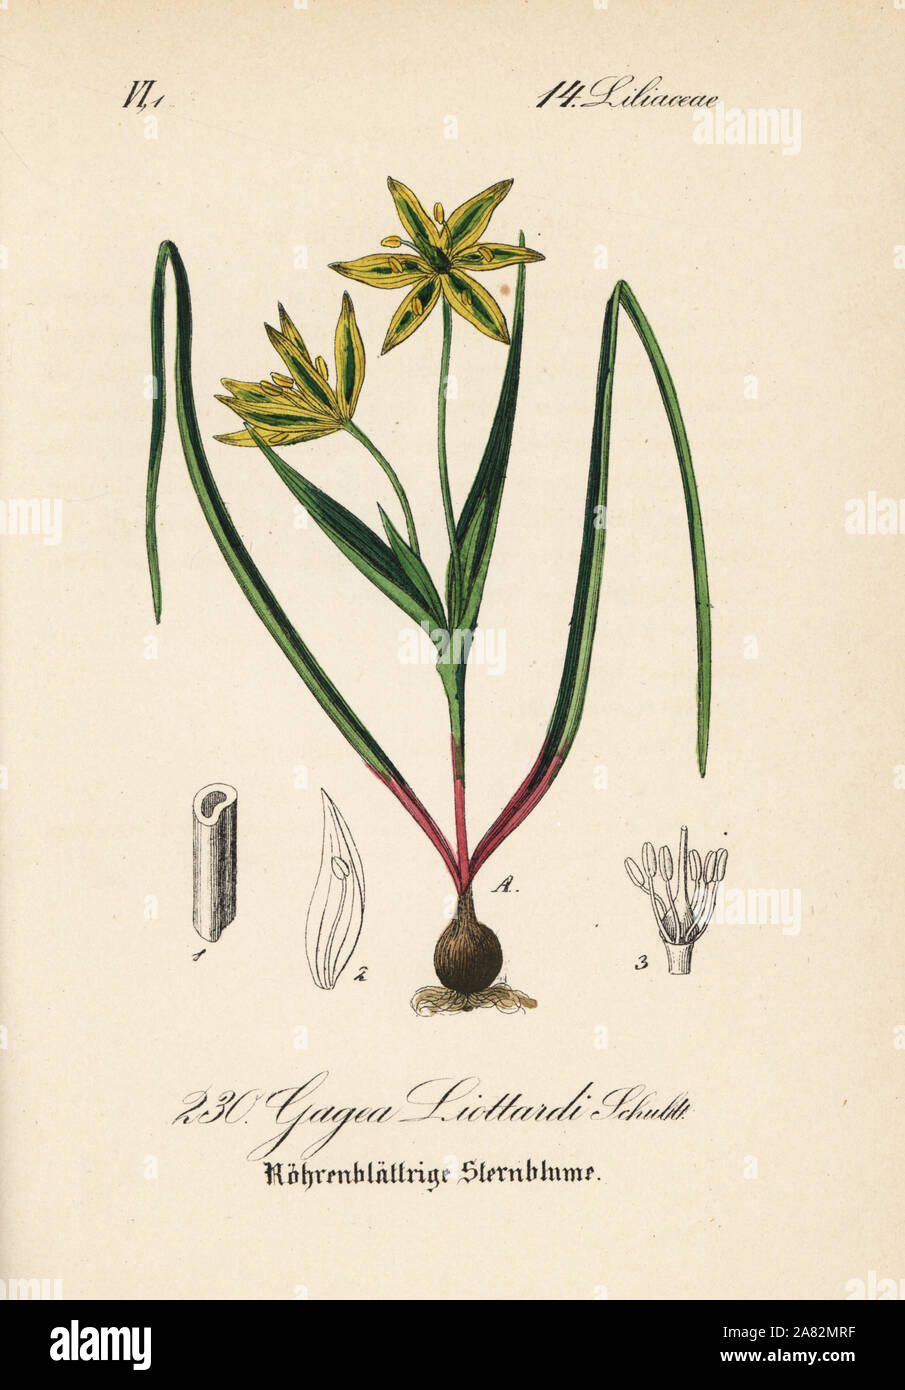 Gagea liottardi. Handcoloured lithograph from Diederich von Schlechtendal's German Flora (Flora von Deutschland), Jena, 1871. Stock Photo